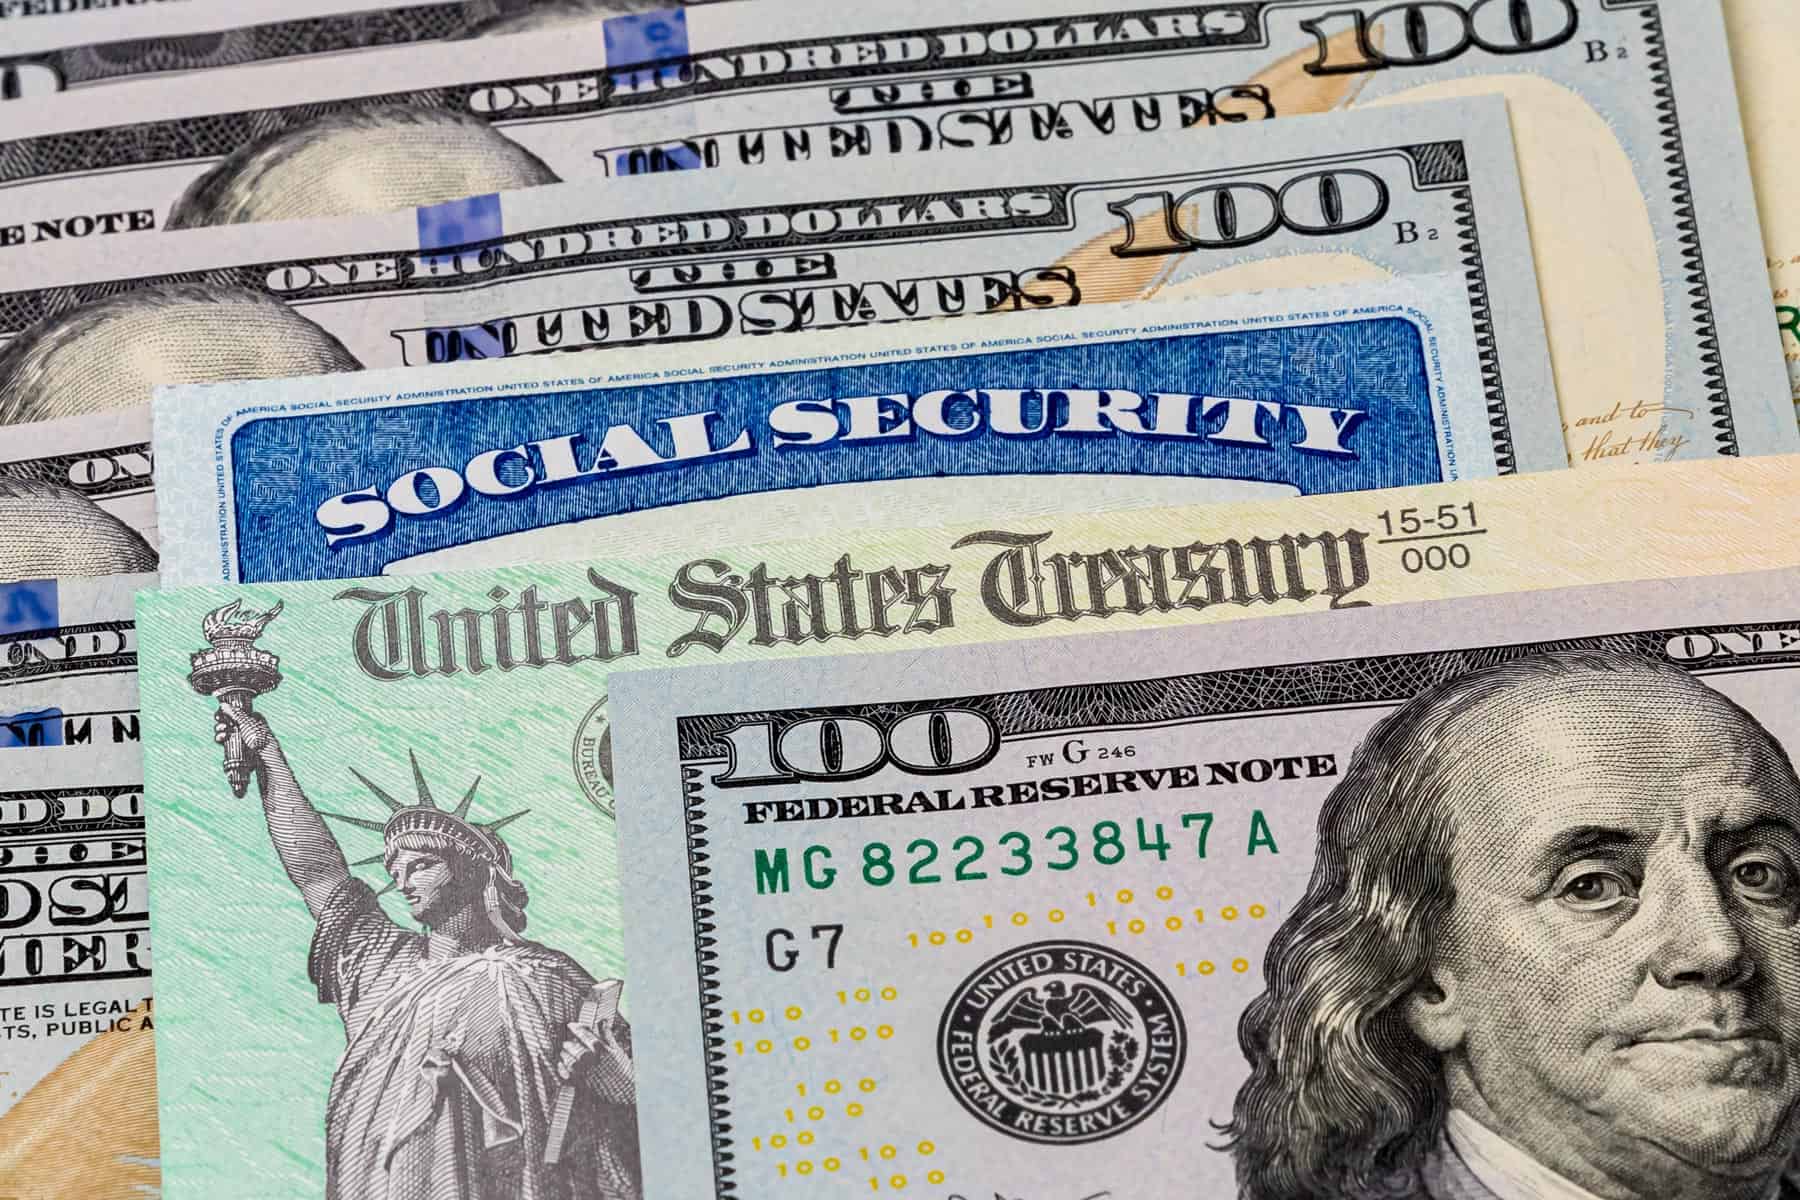 Cheques de Hasta 1827 Dolares Mensuales para Residentes en Estados Unidos